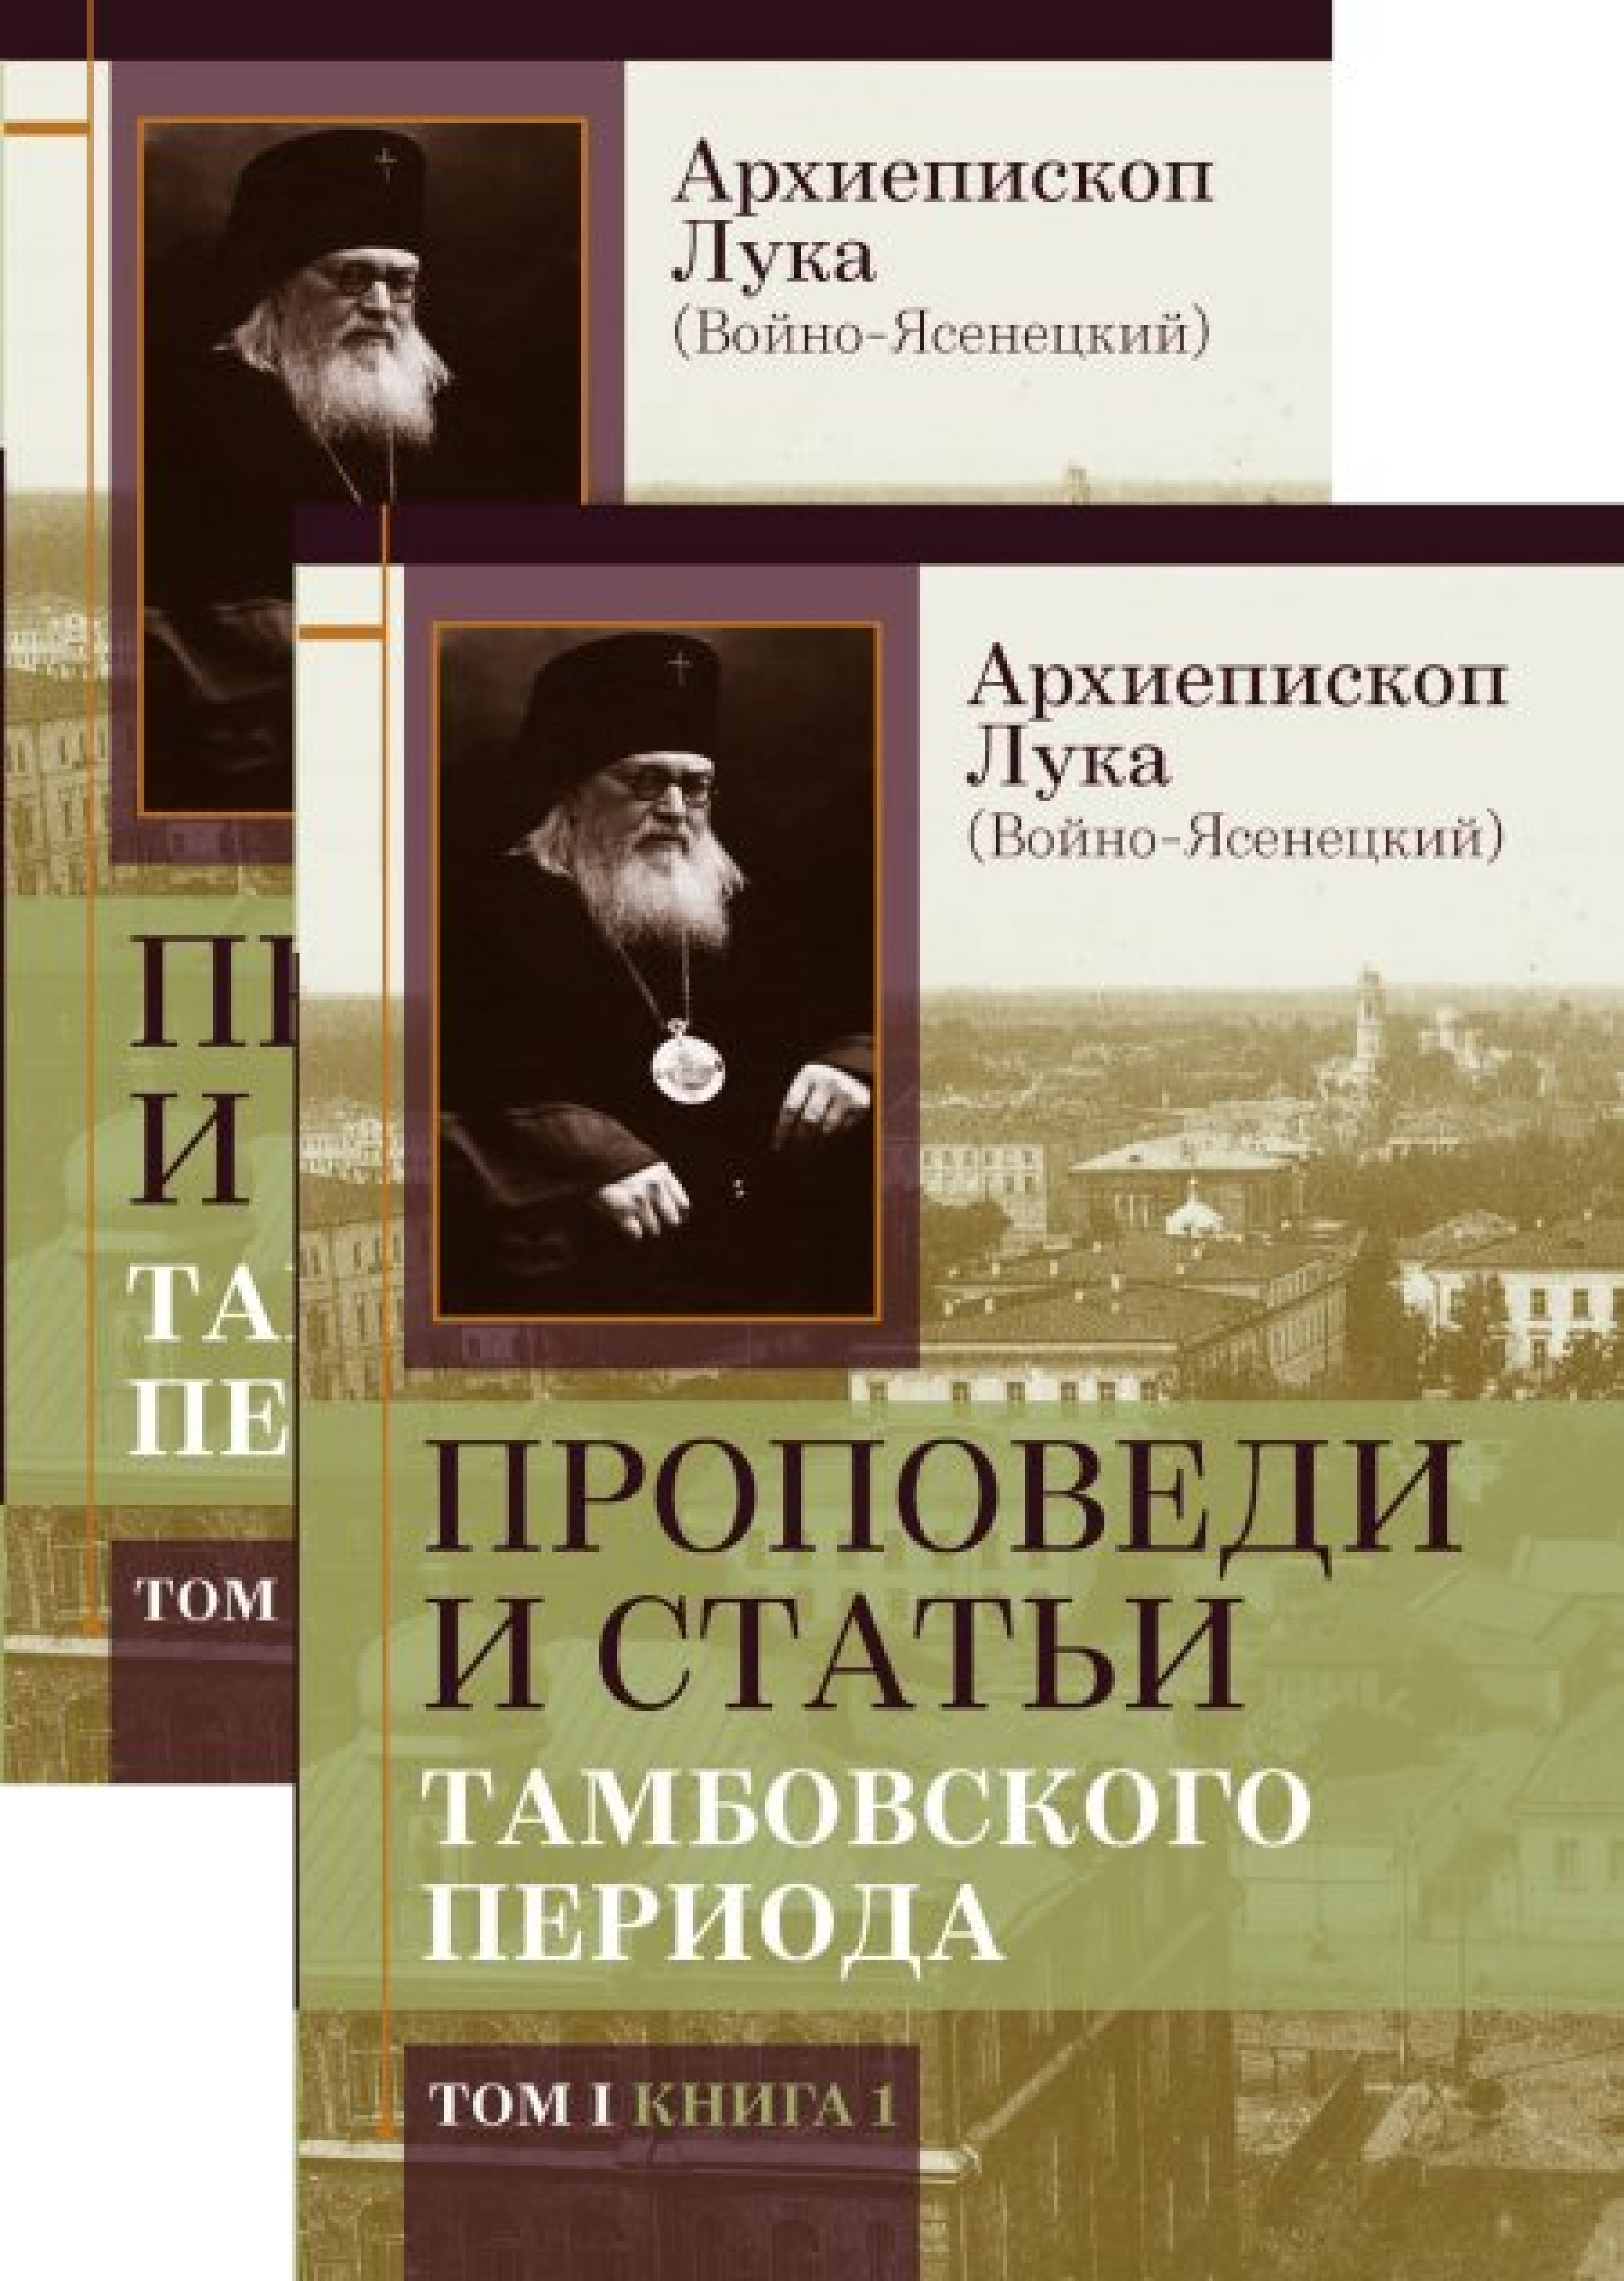 Проповеди и статьи Тамбовского периода. Комплект в 2-х томах